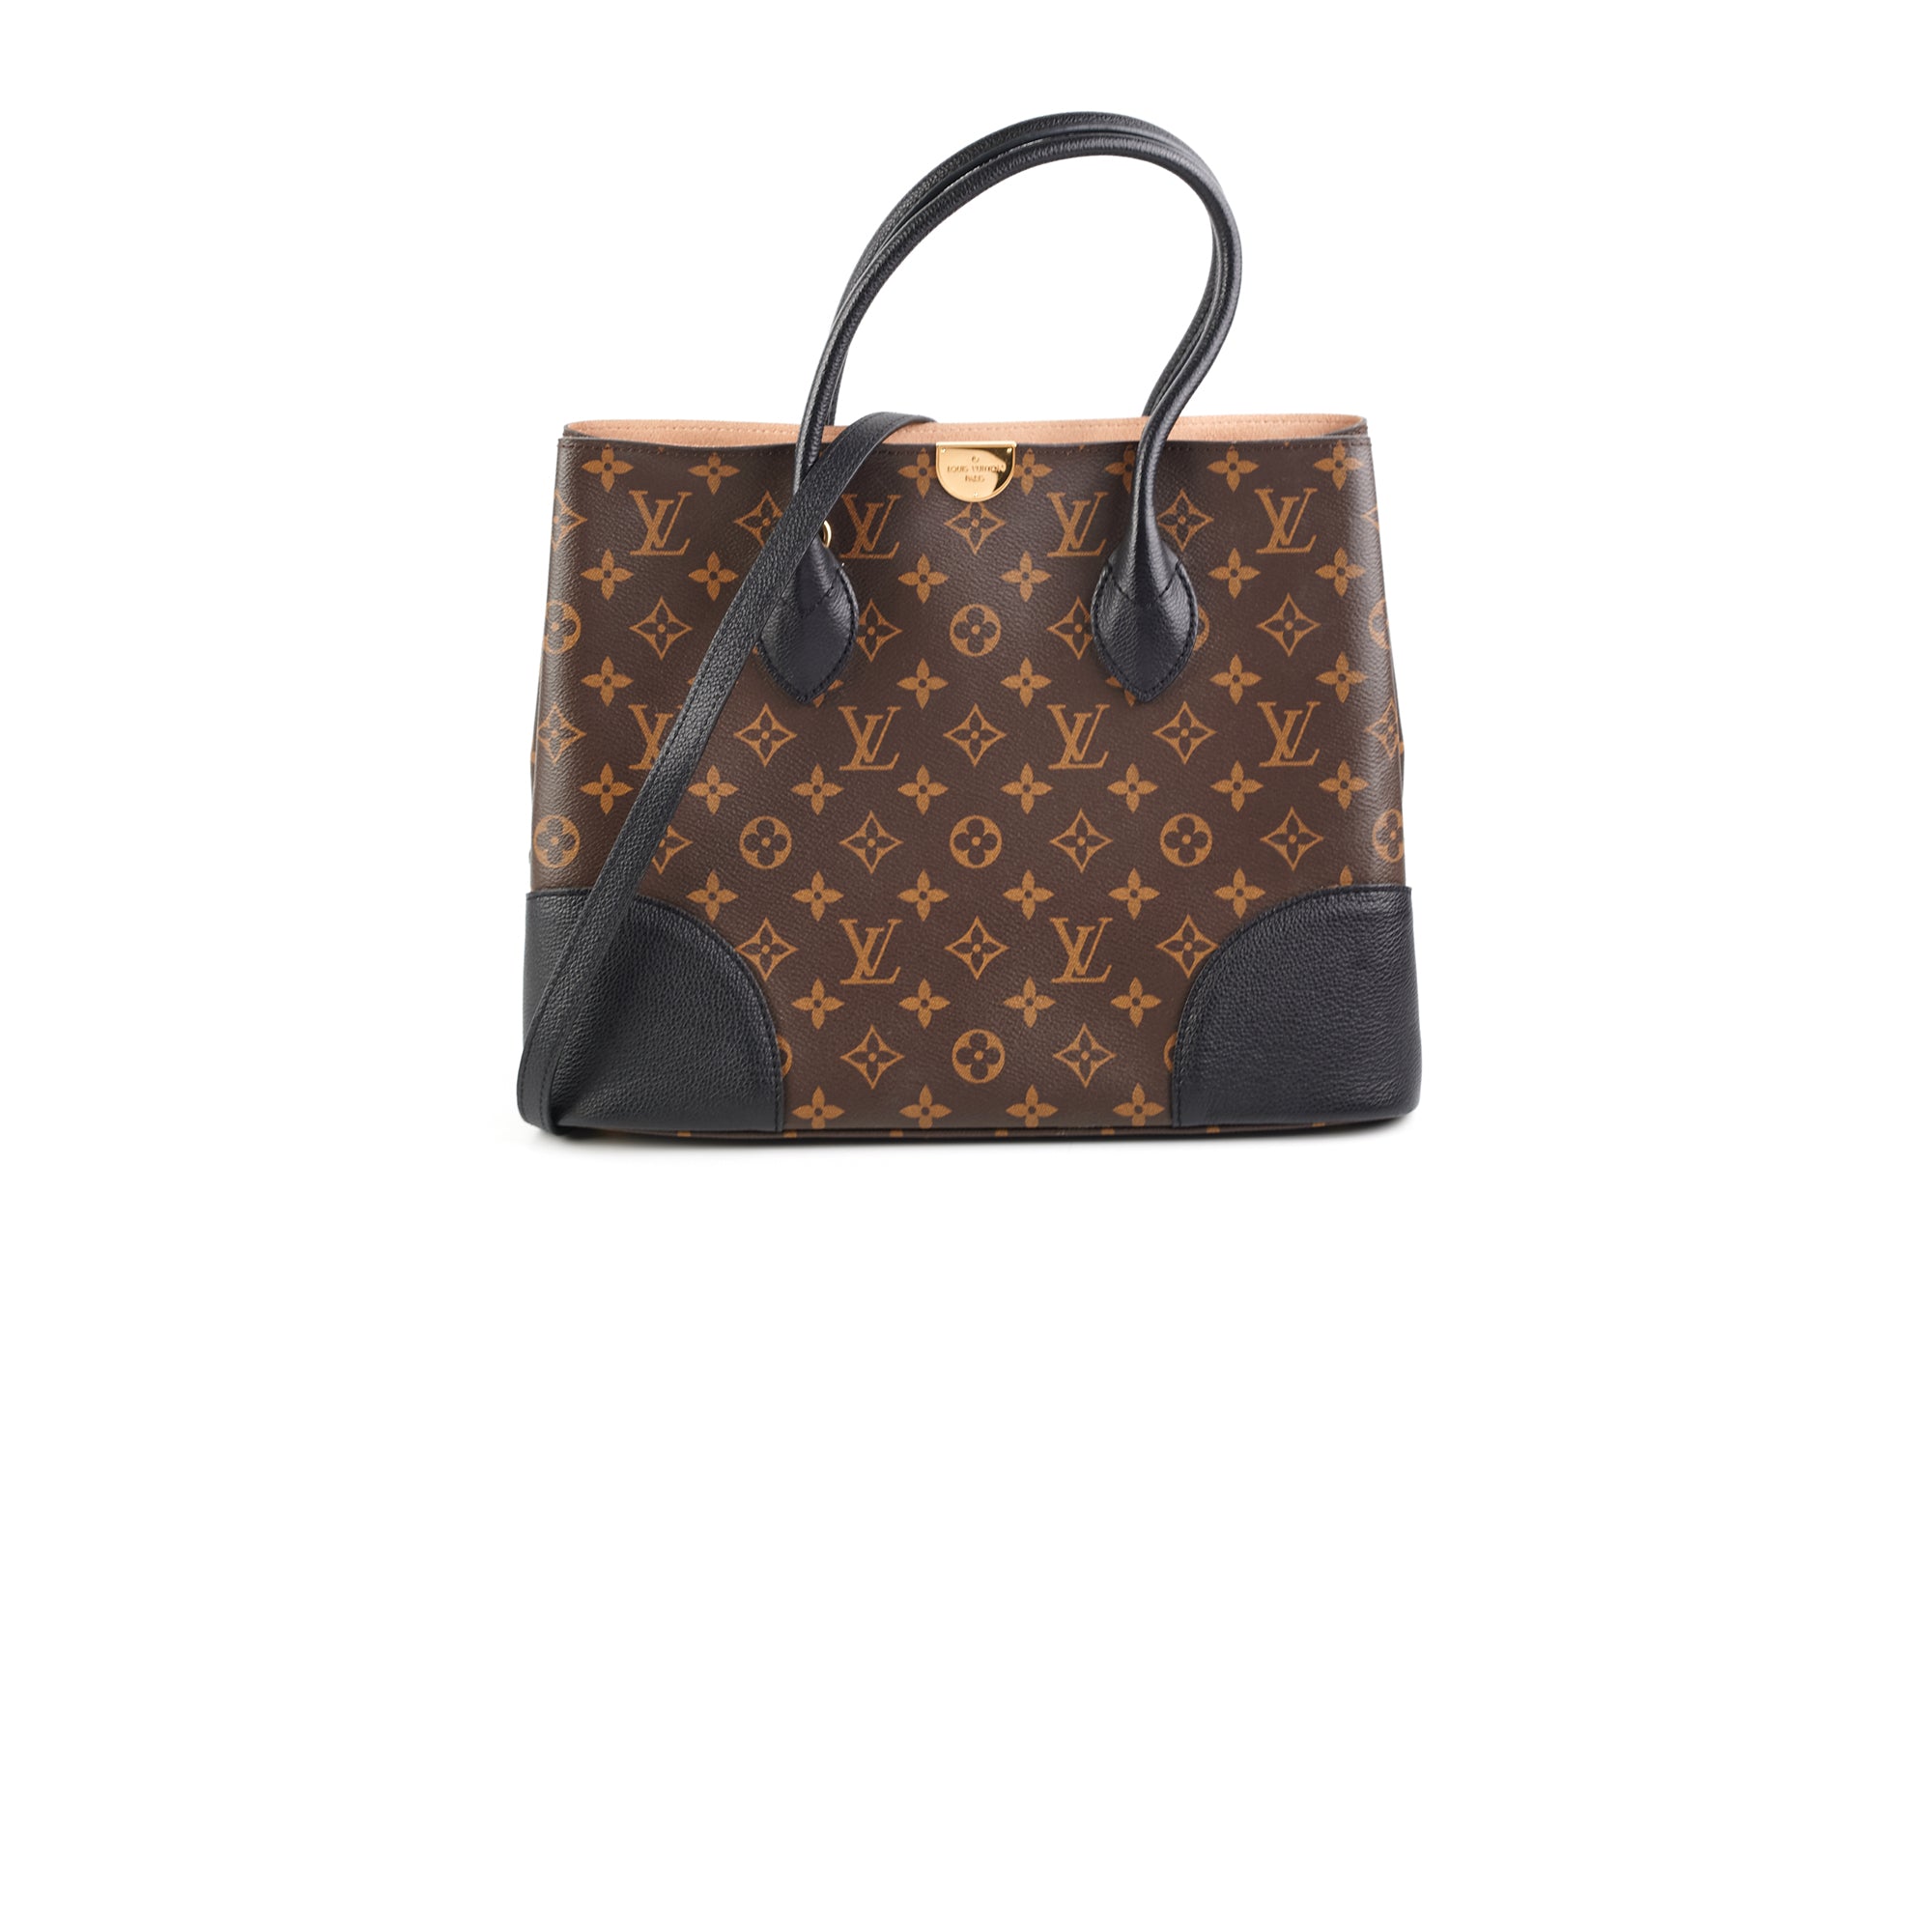 Louis Vuitton Flandrin Handbag 397224